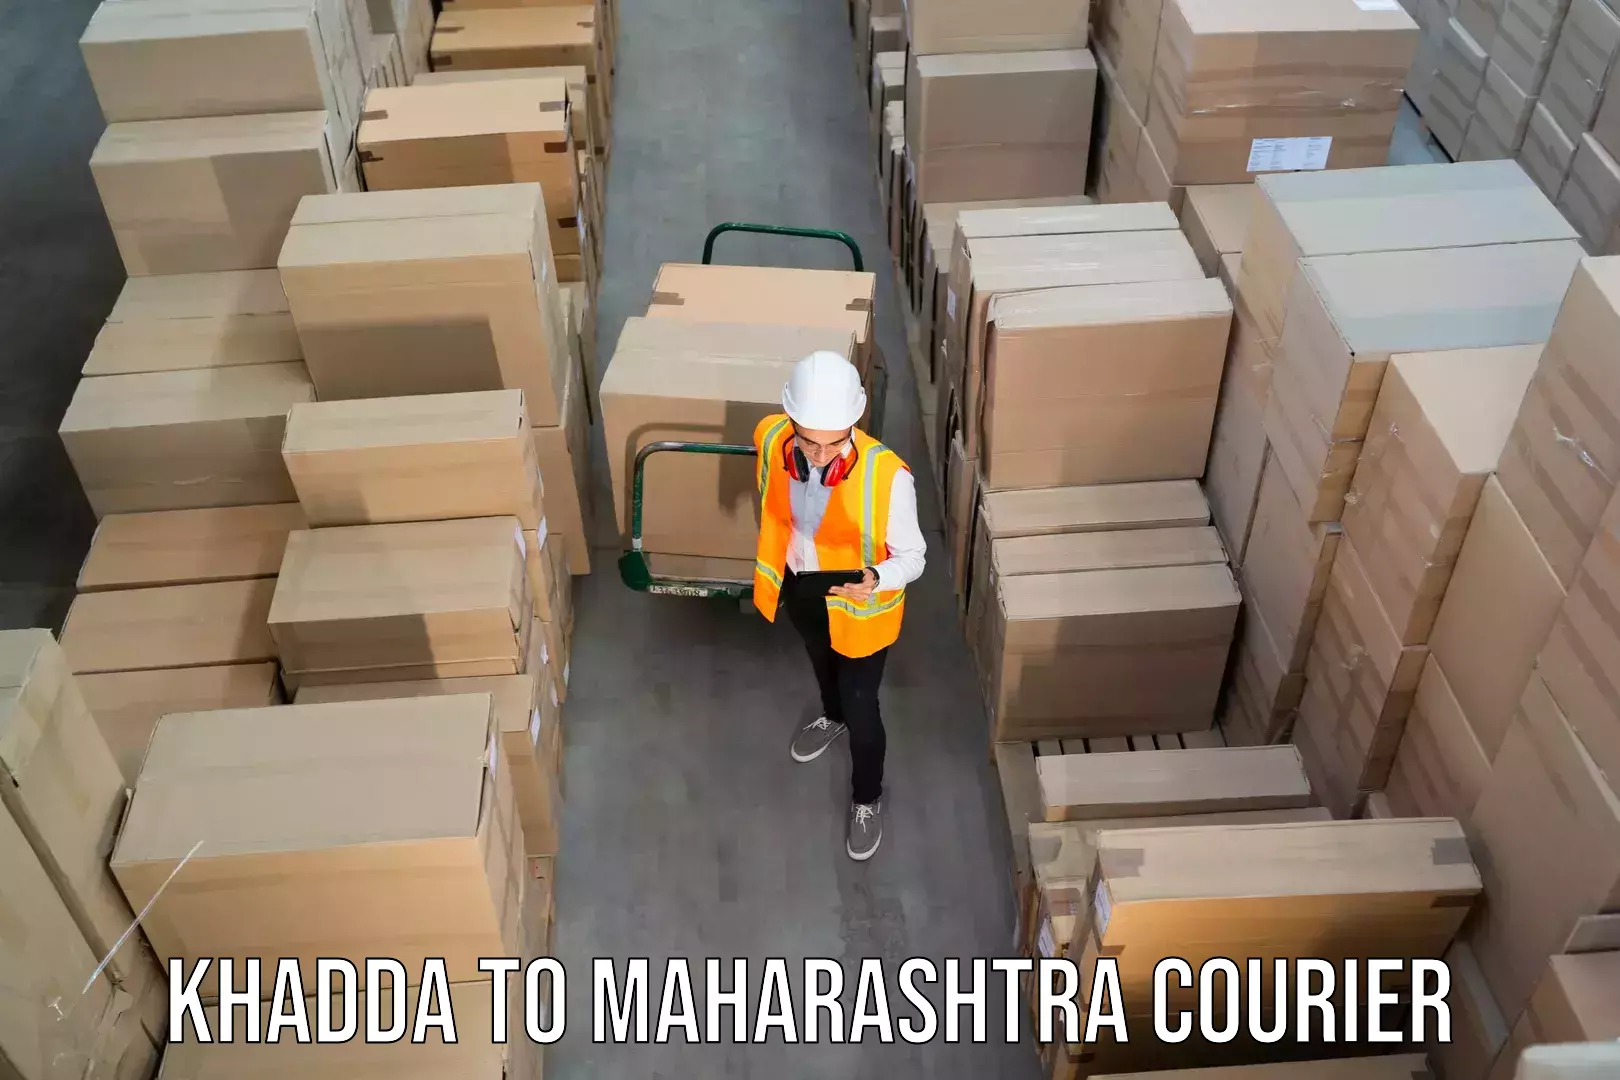 Local delivery service Khadda to Maharashtra